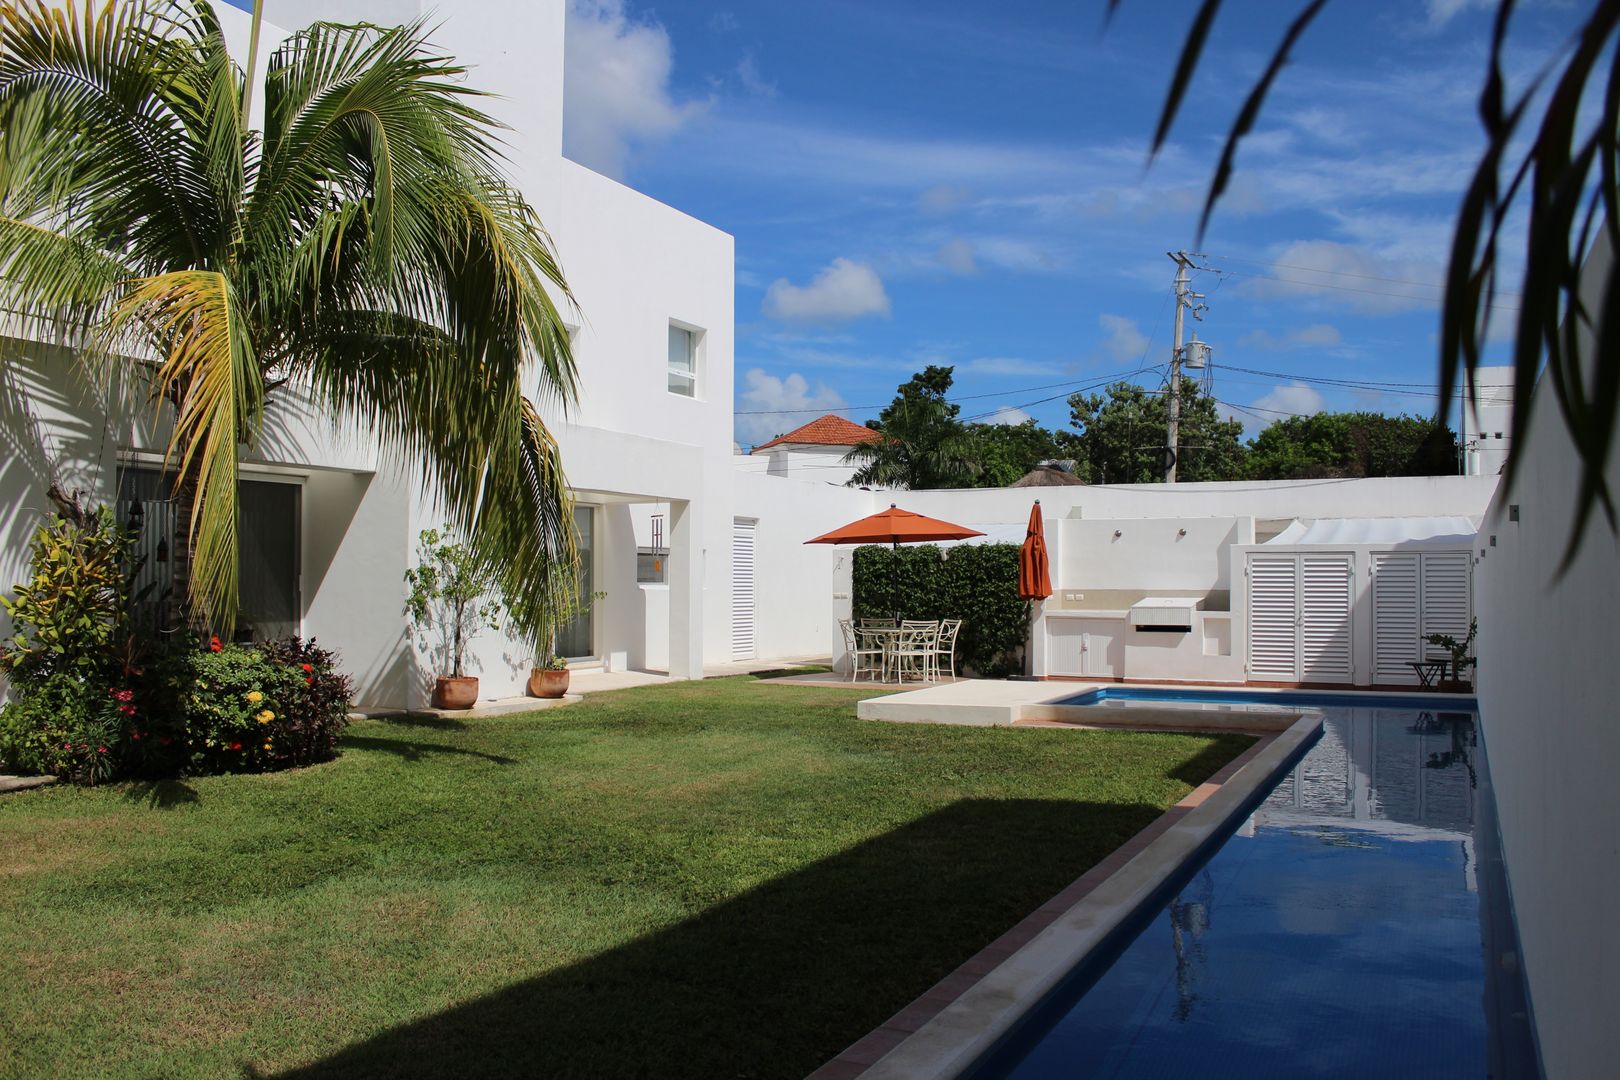 Casa habitacion en en Cozumel Quintana Roo, A2 HOMES SA DE CV A2 HOMES SA DE CV บ้านและที่อยู่อาศัย